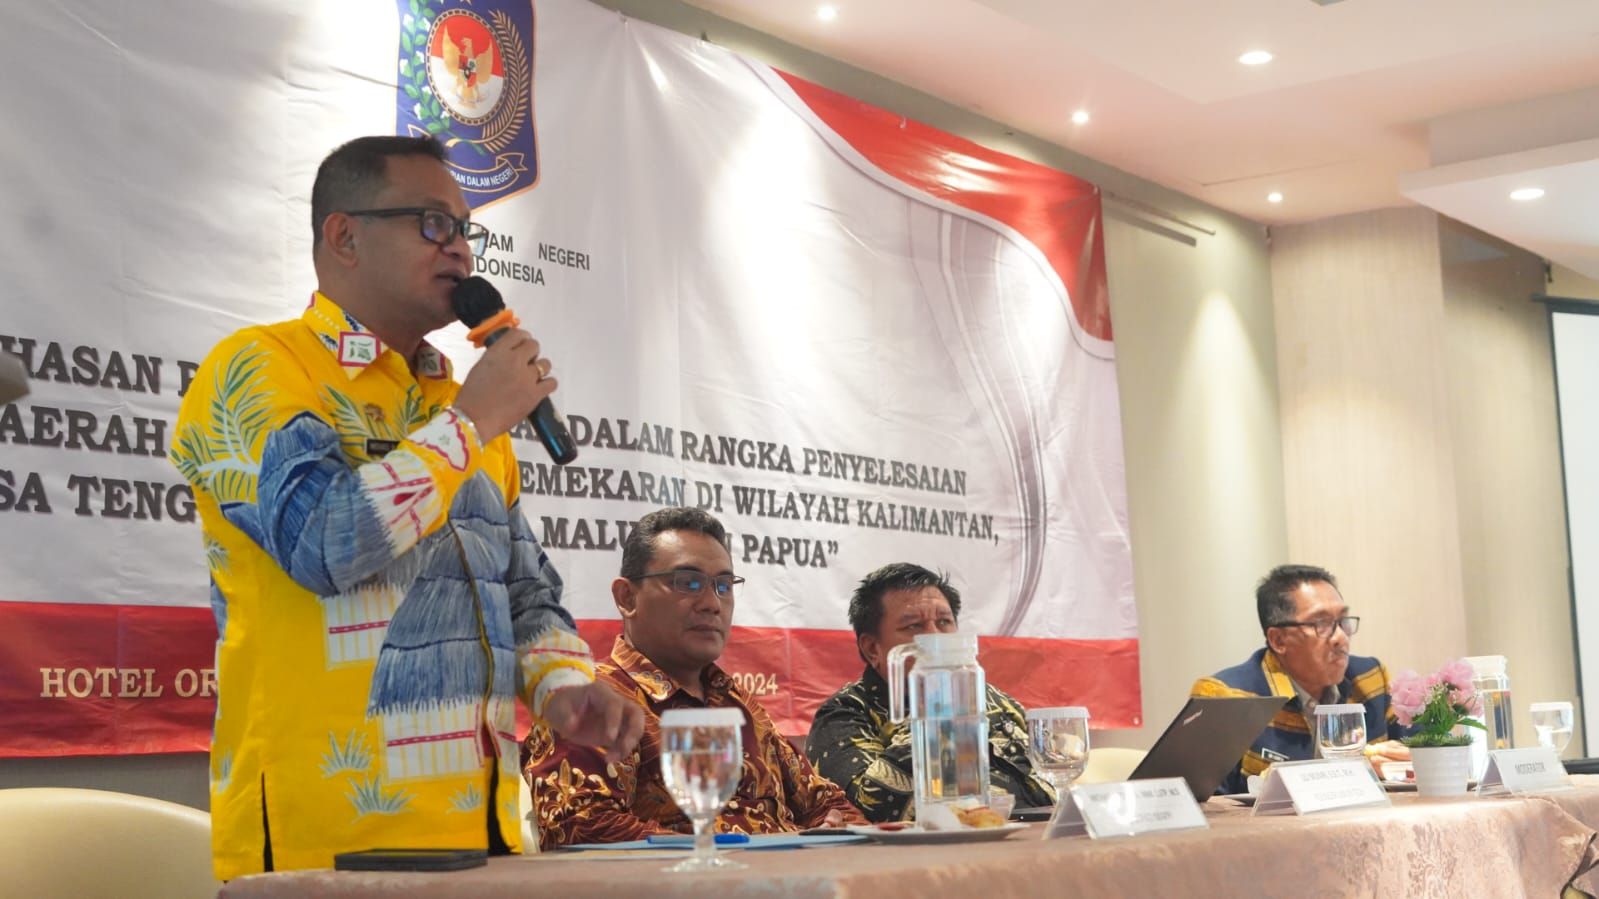 Penjabat Bupati Mappi, Michael R. Gomar S.STP.,M.Si menjadi Narasumber dalam rapat Pembahasan Pusat dan Daerah Dalam Rangka Penyelesaian Permasalahan pada Daerah Otonom Hasil Pemekaran di Wilayah Kalimantan, Nusa Tenggara, Sulawesi, Maluku dan Papua.